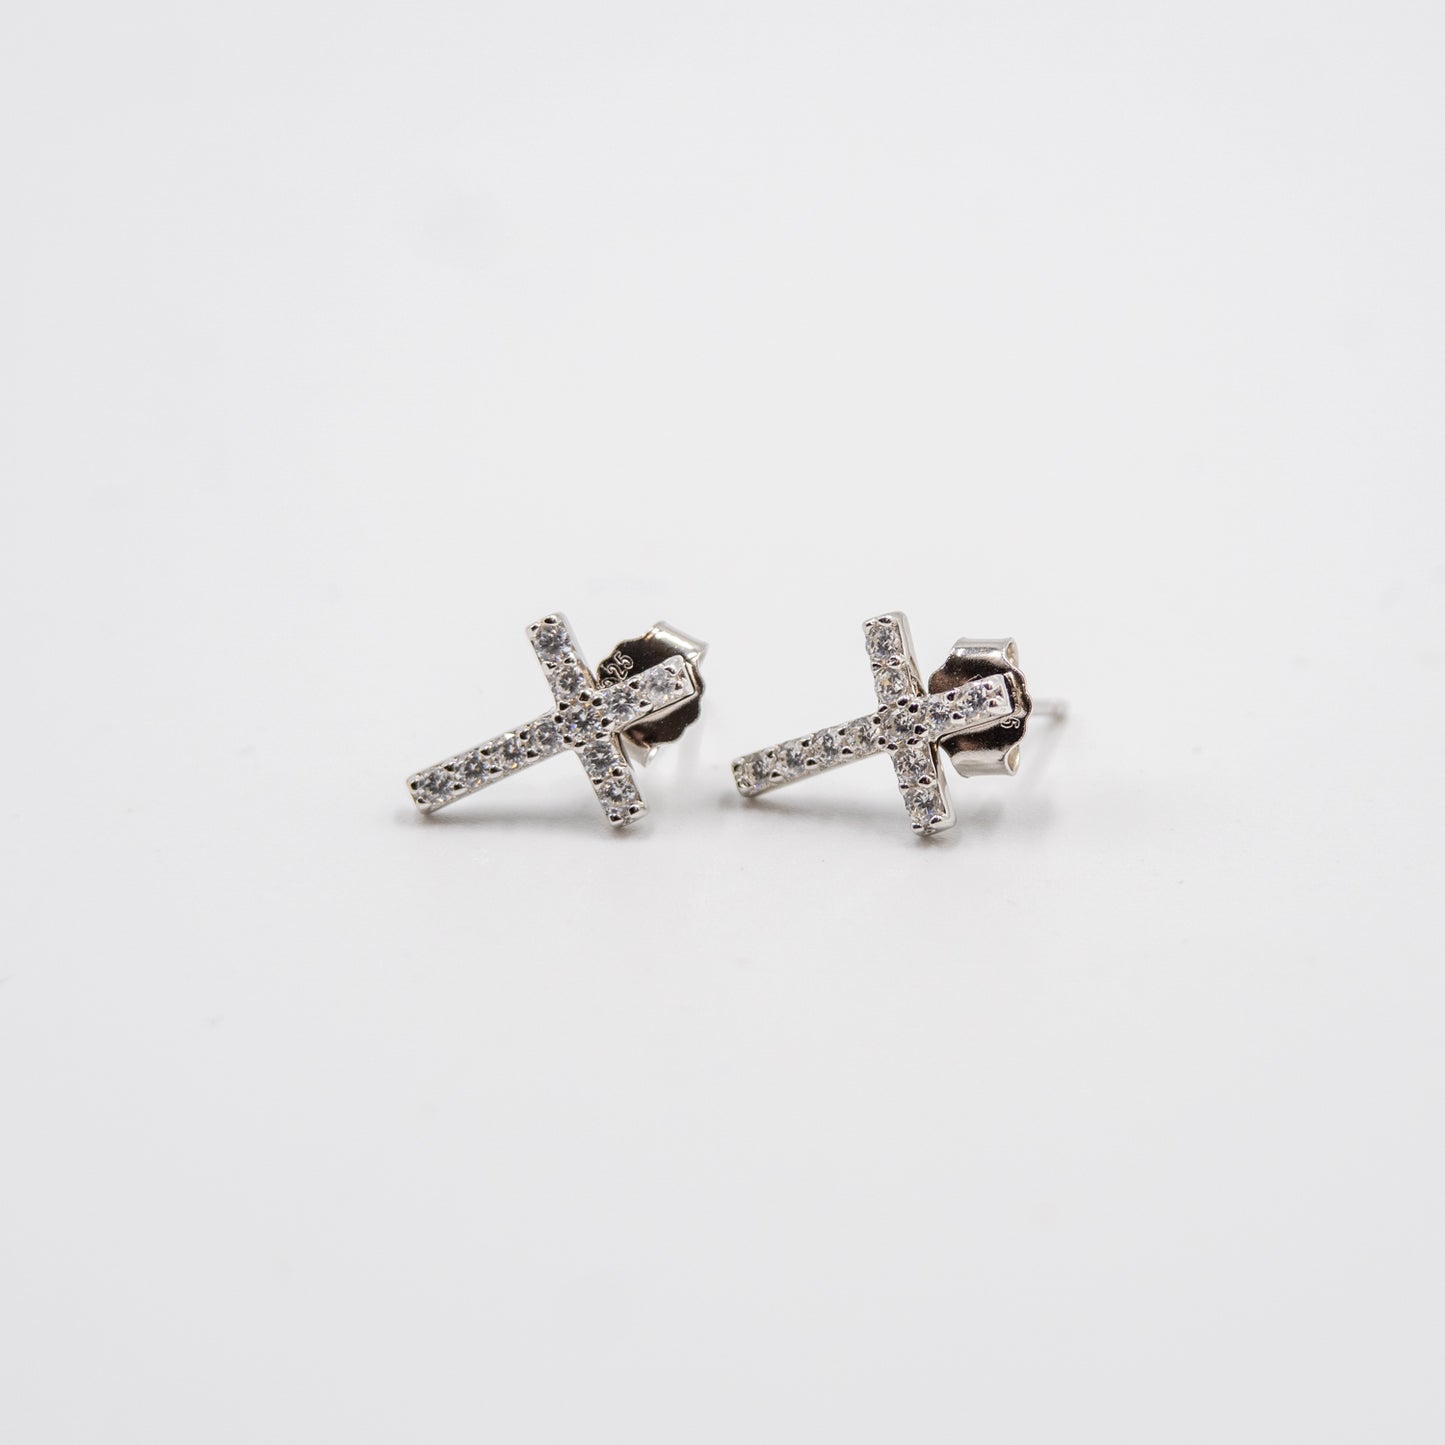 DK-925-149 sterling silver cross earrings